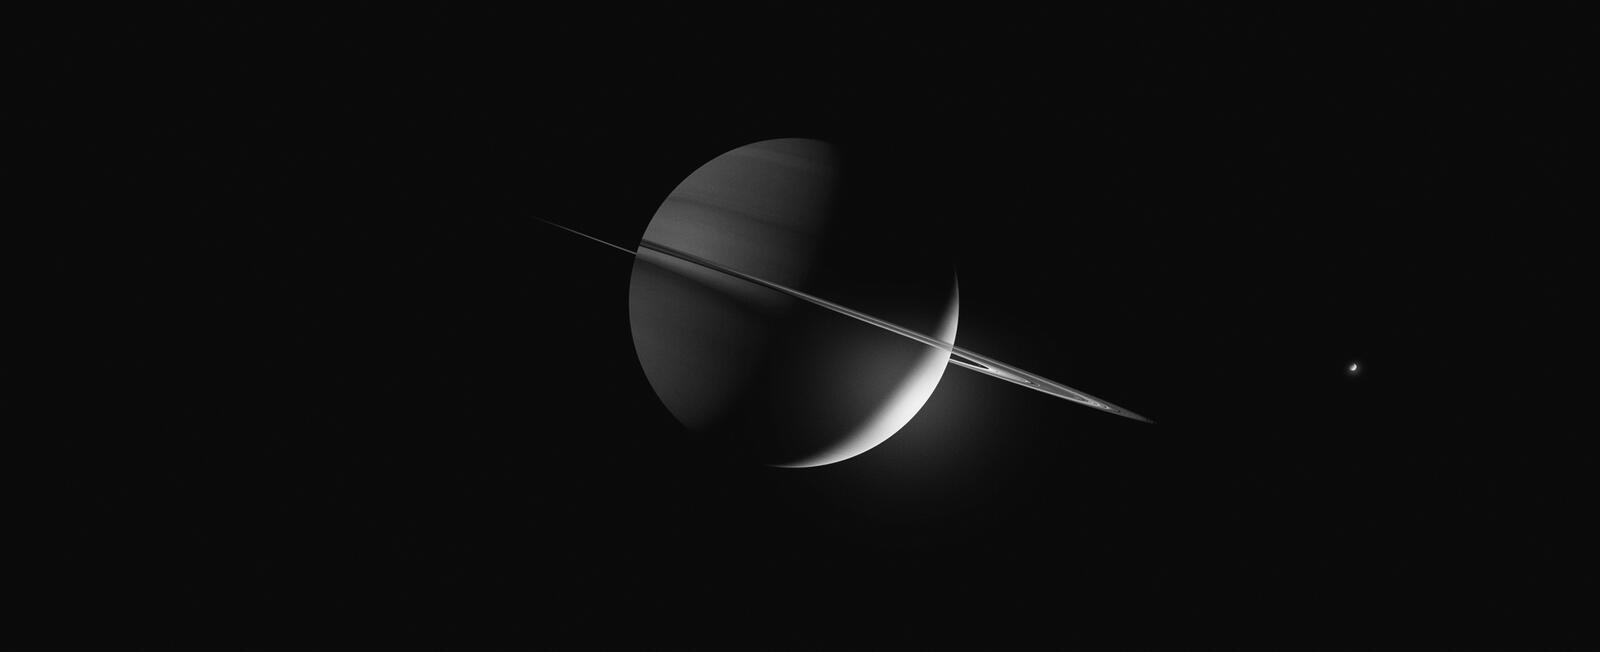 Обои Сатурн кольцевая система планета на рабочий стол